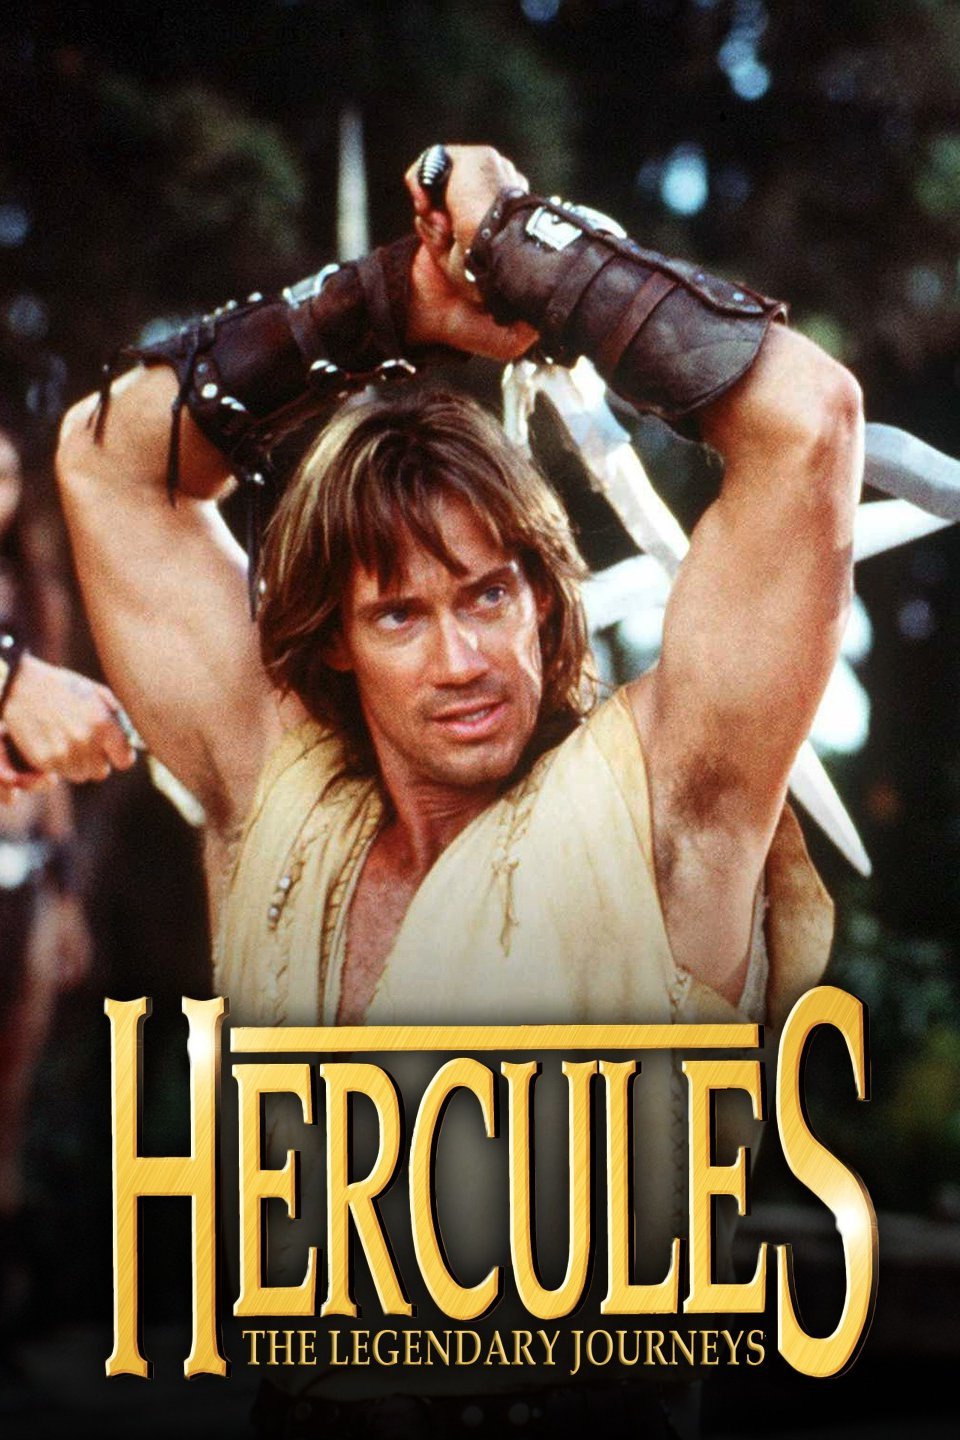 hercules the legendary journeys director